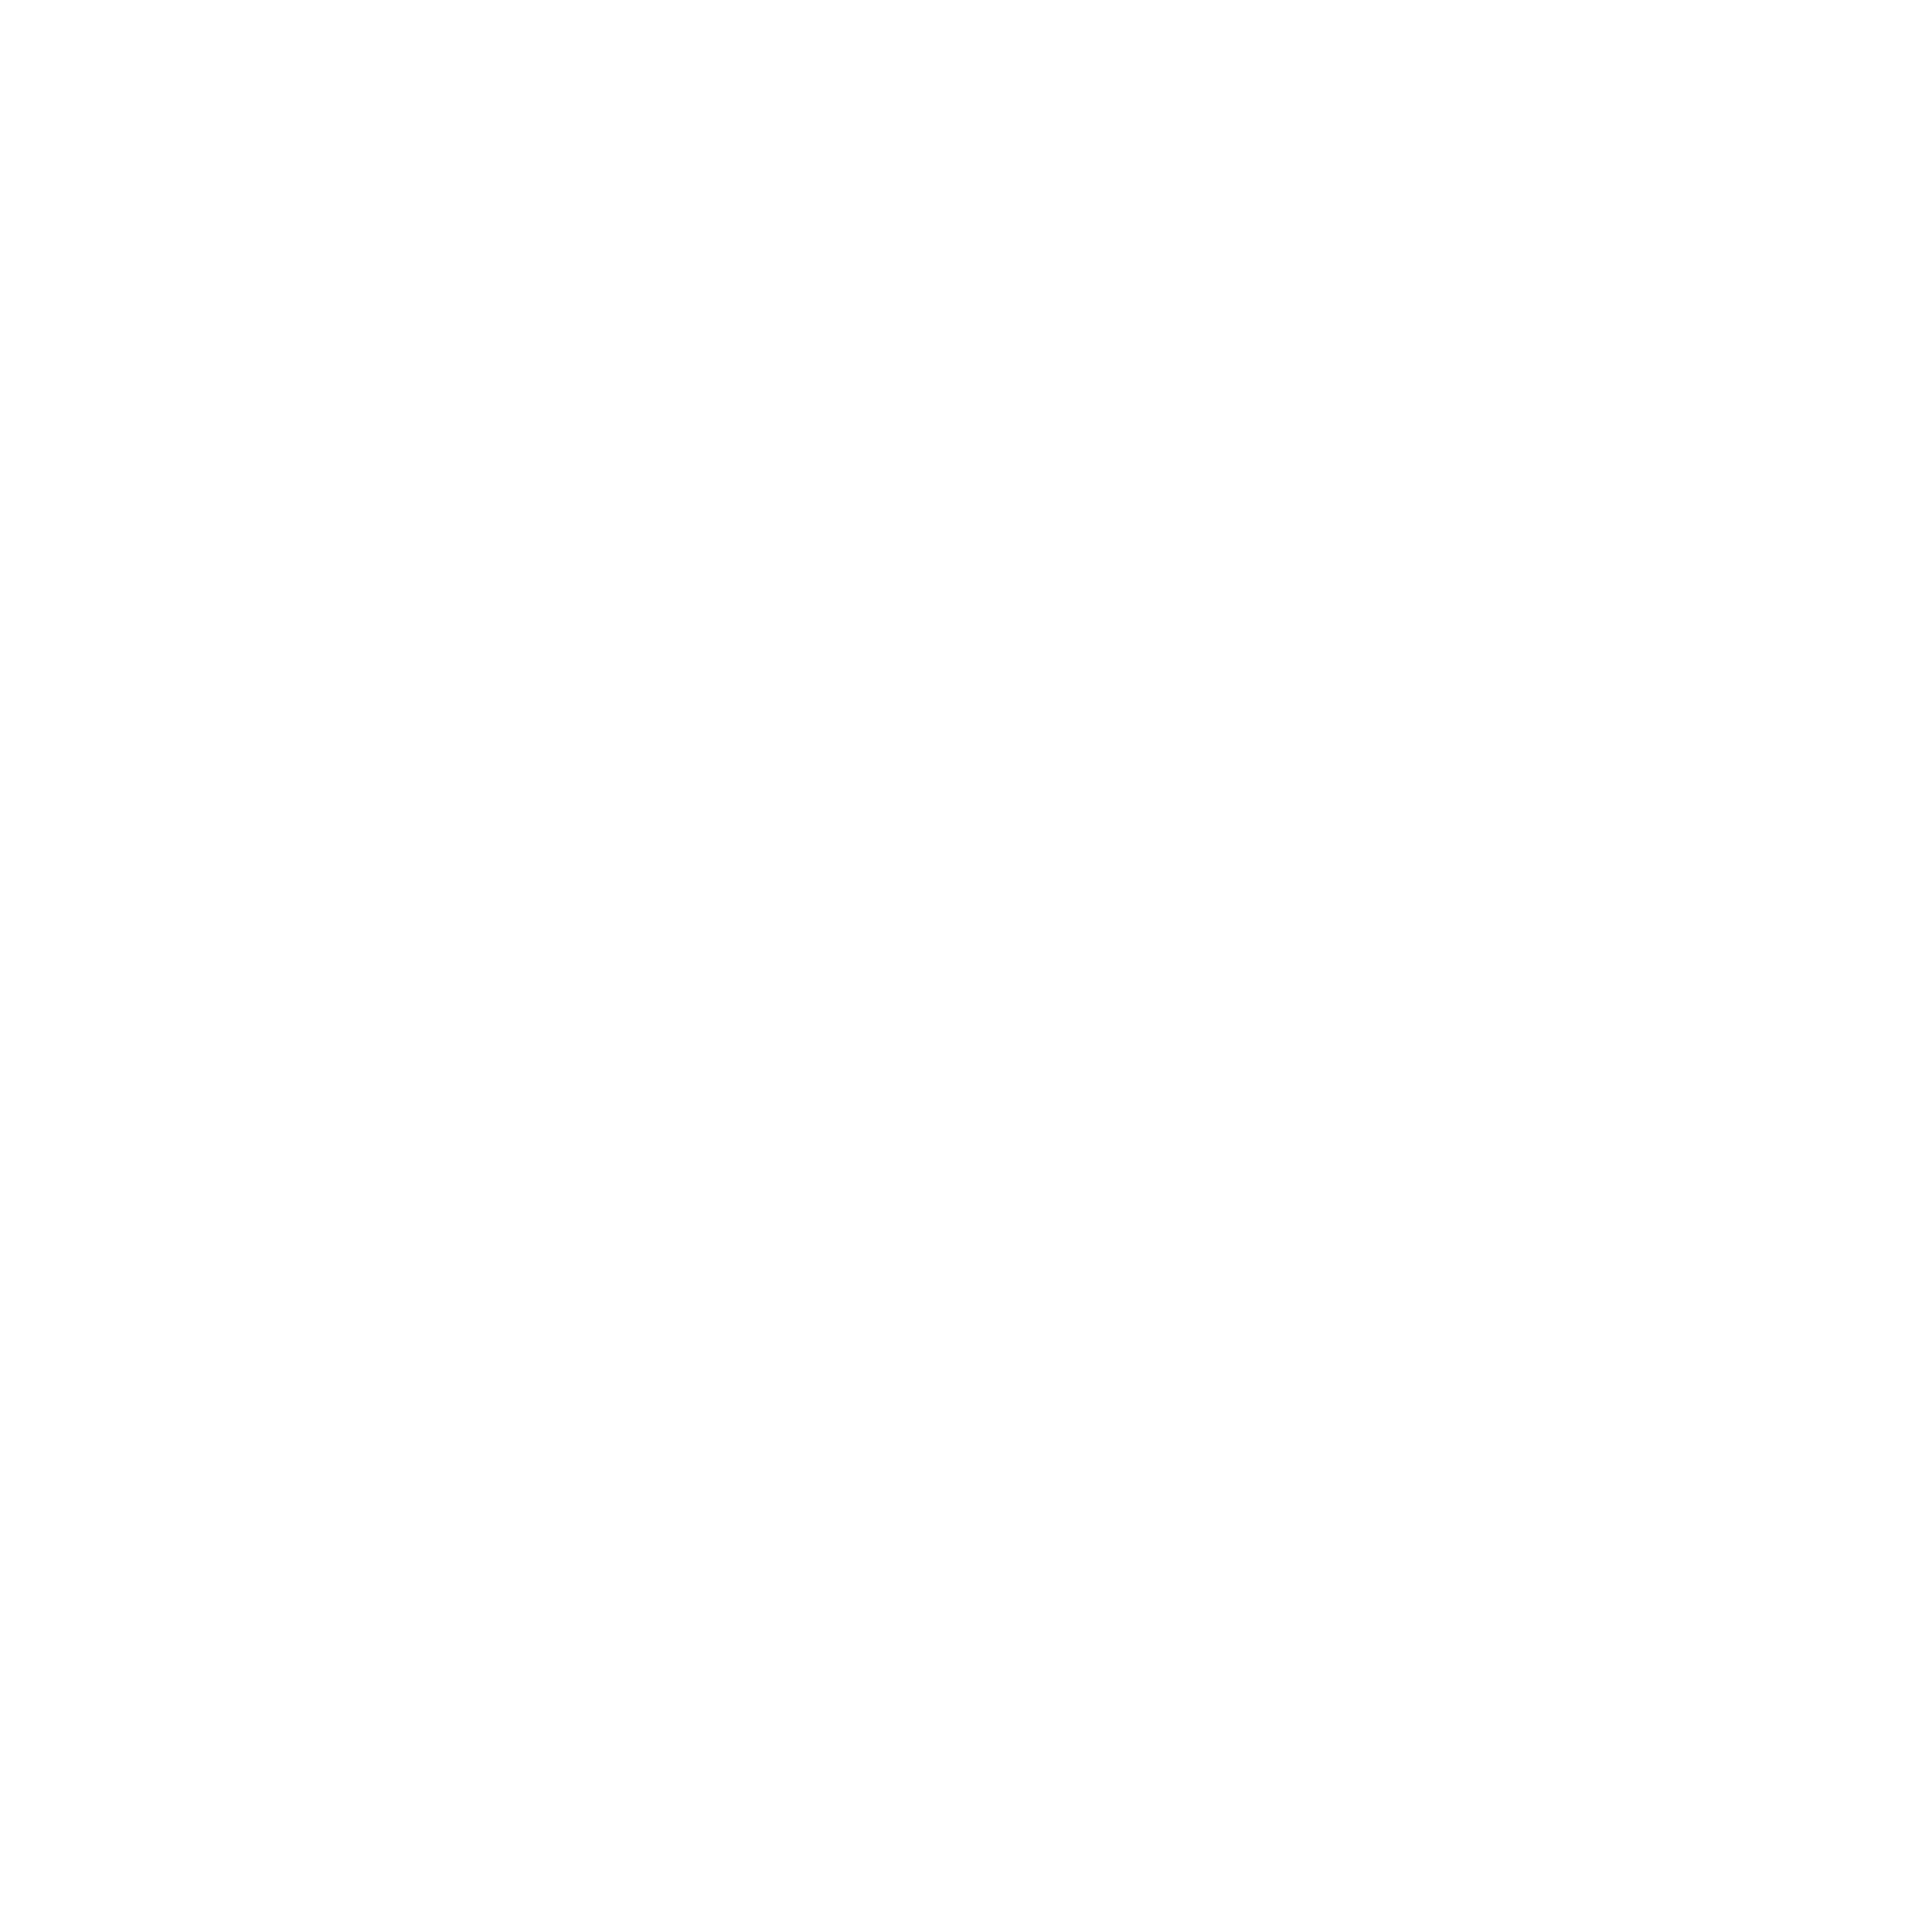 ELYSIUM EXPERIENCES